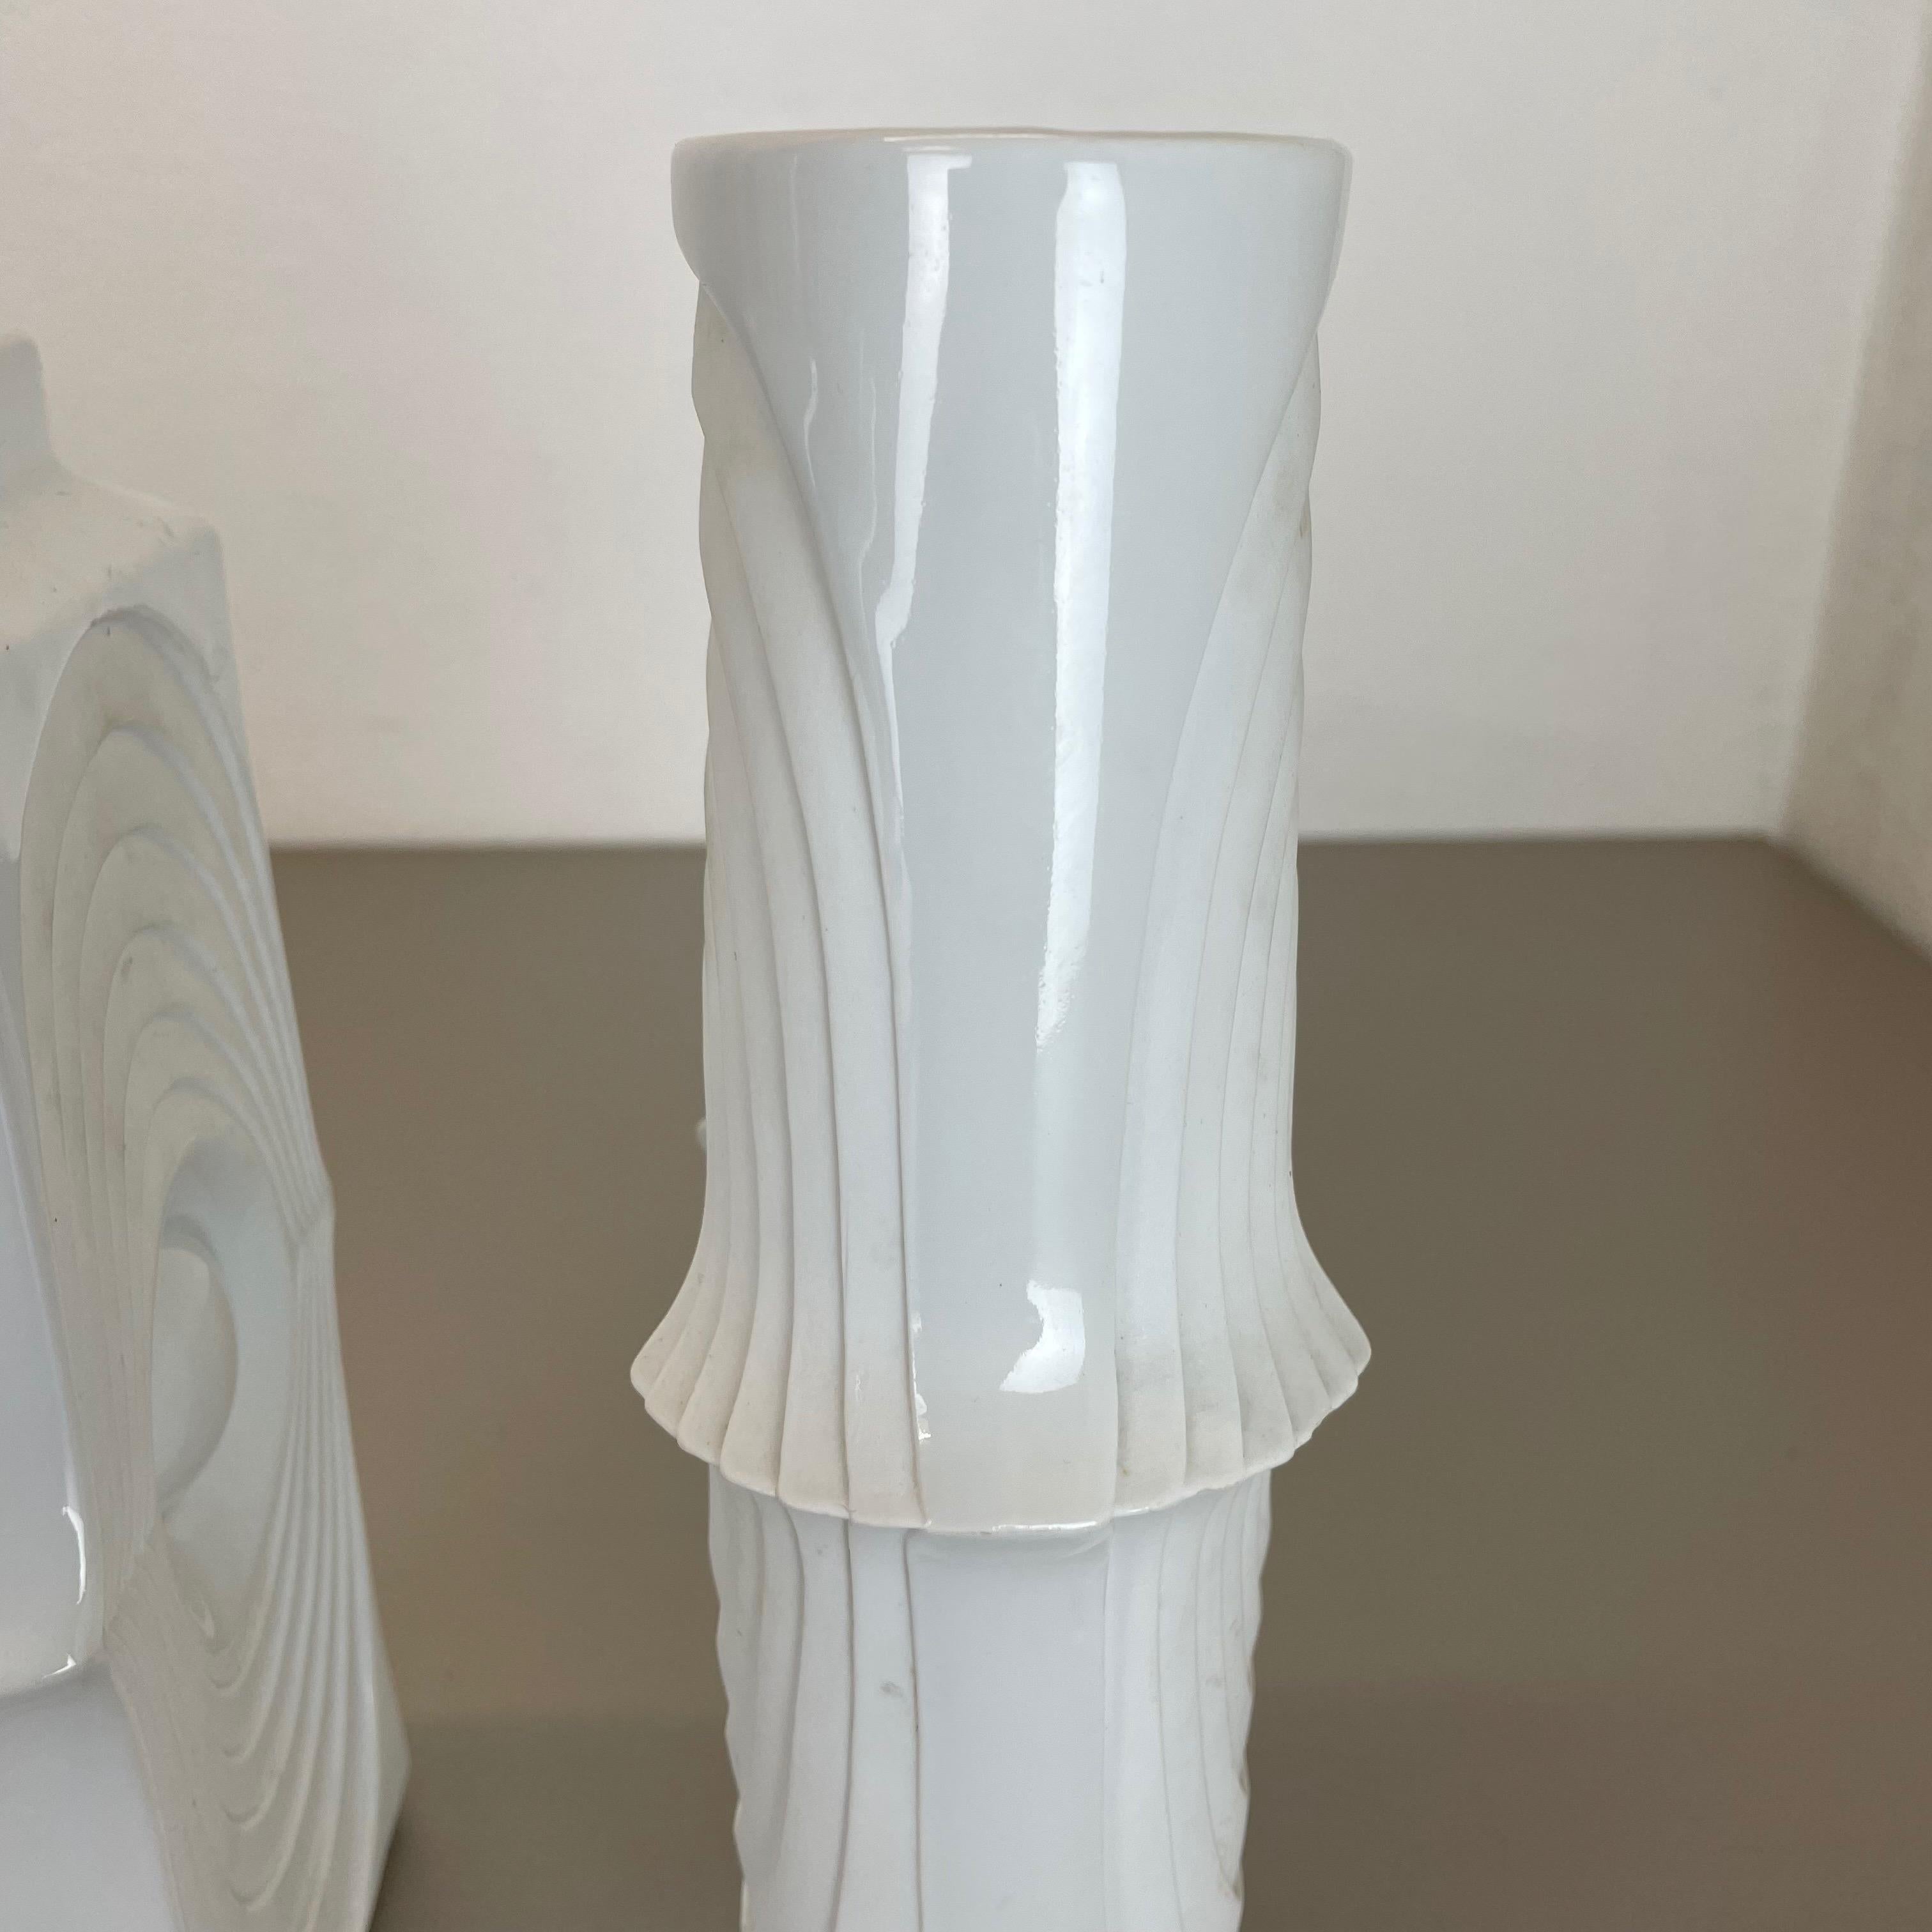 Set of 2 Original Porcelain OP Art Vase Made by Royal Bavaria KPM Germany, 1970s For Sale 8